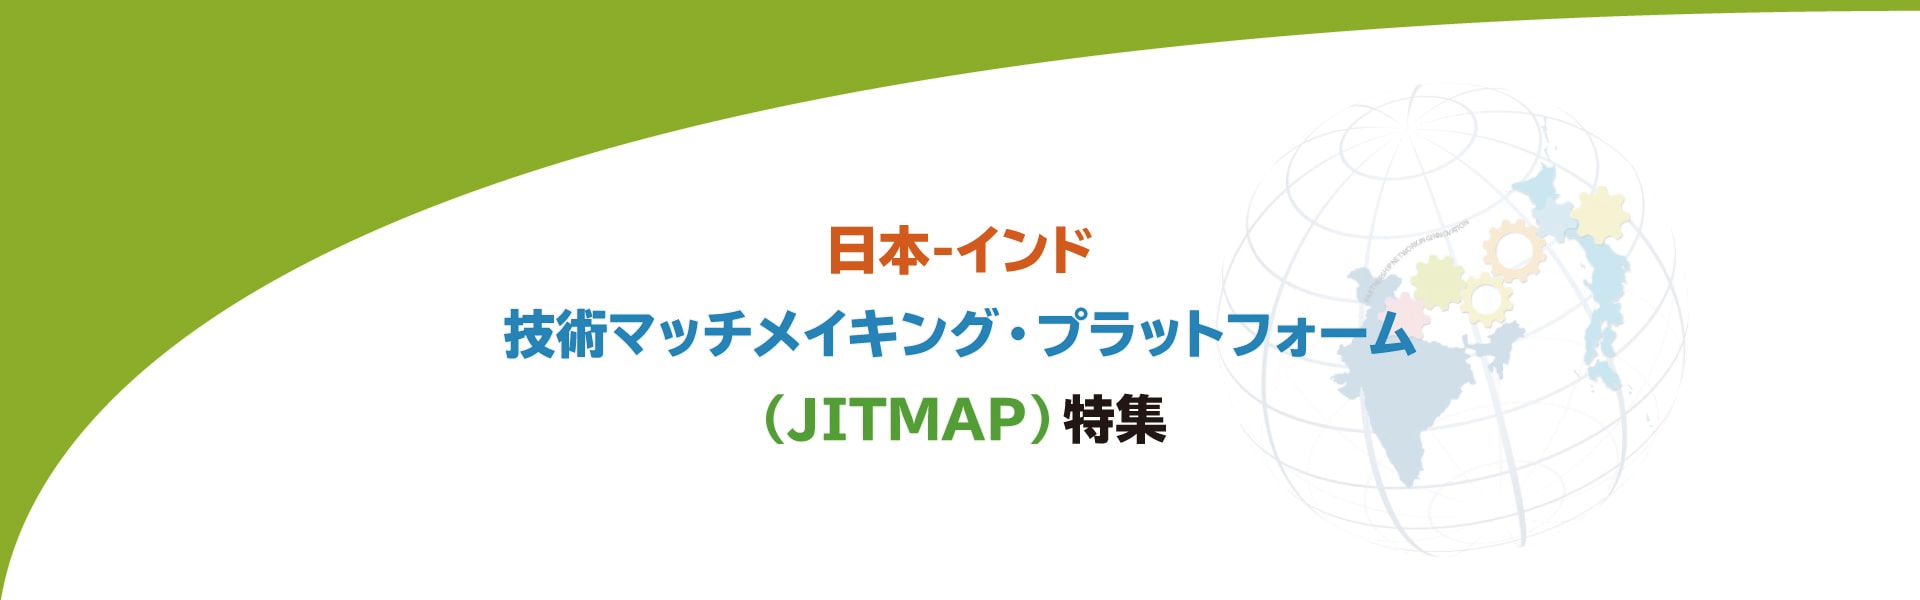 JIT-MAP